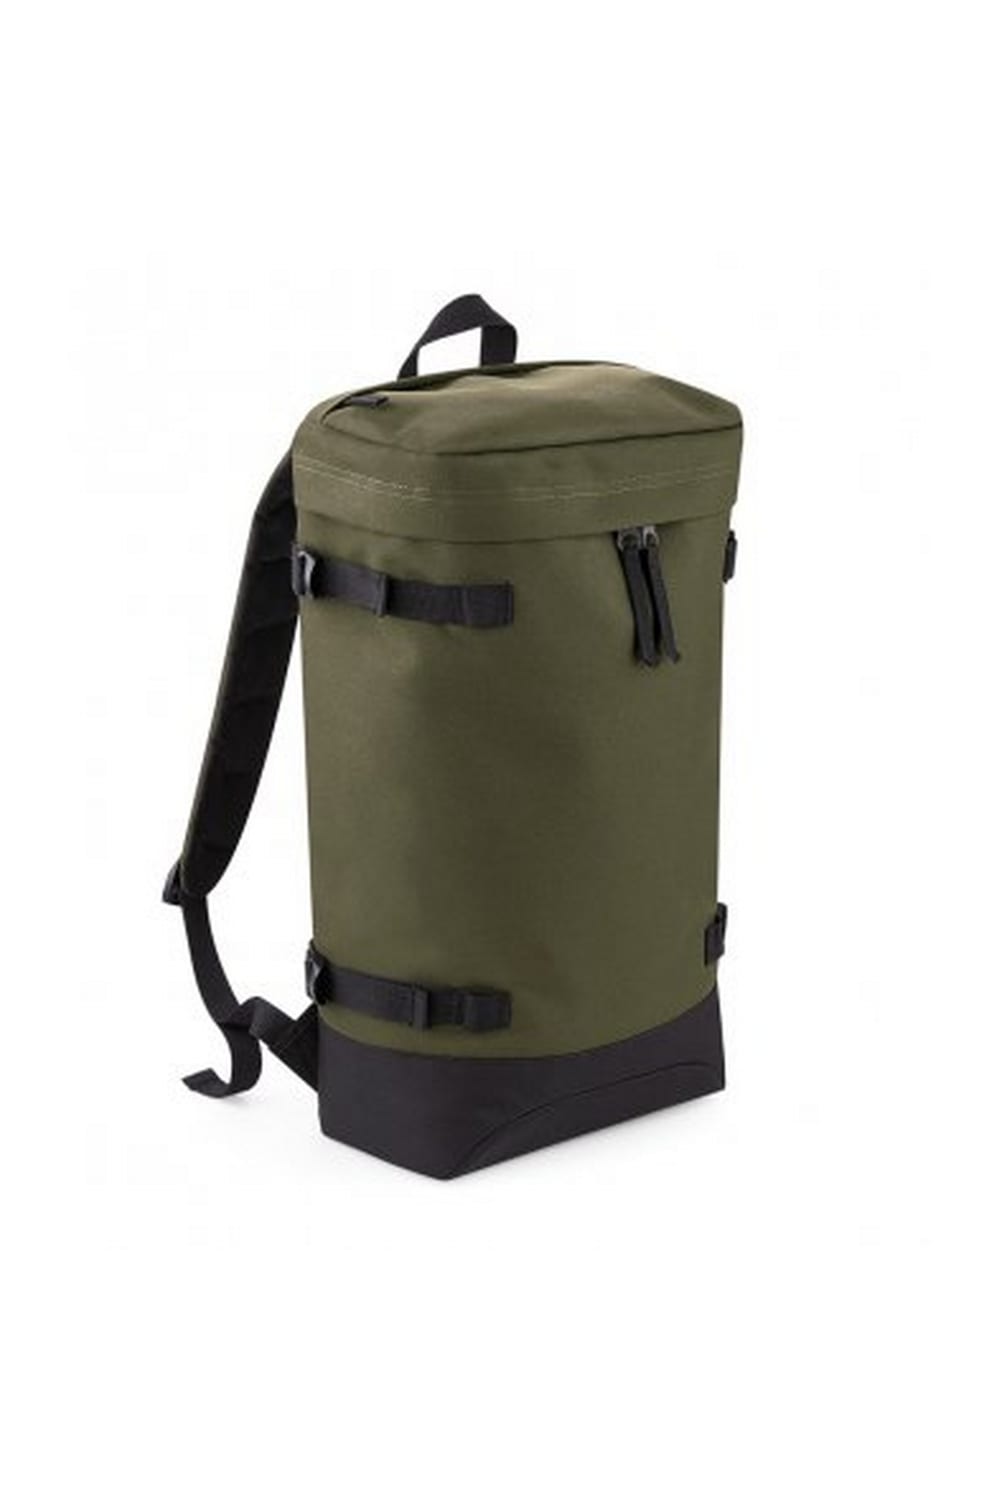 Urban Toploader Backpack - Military Green